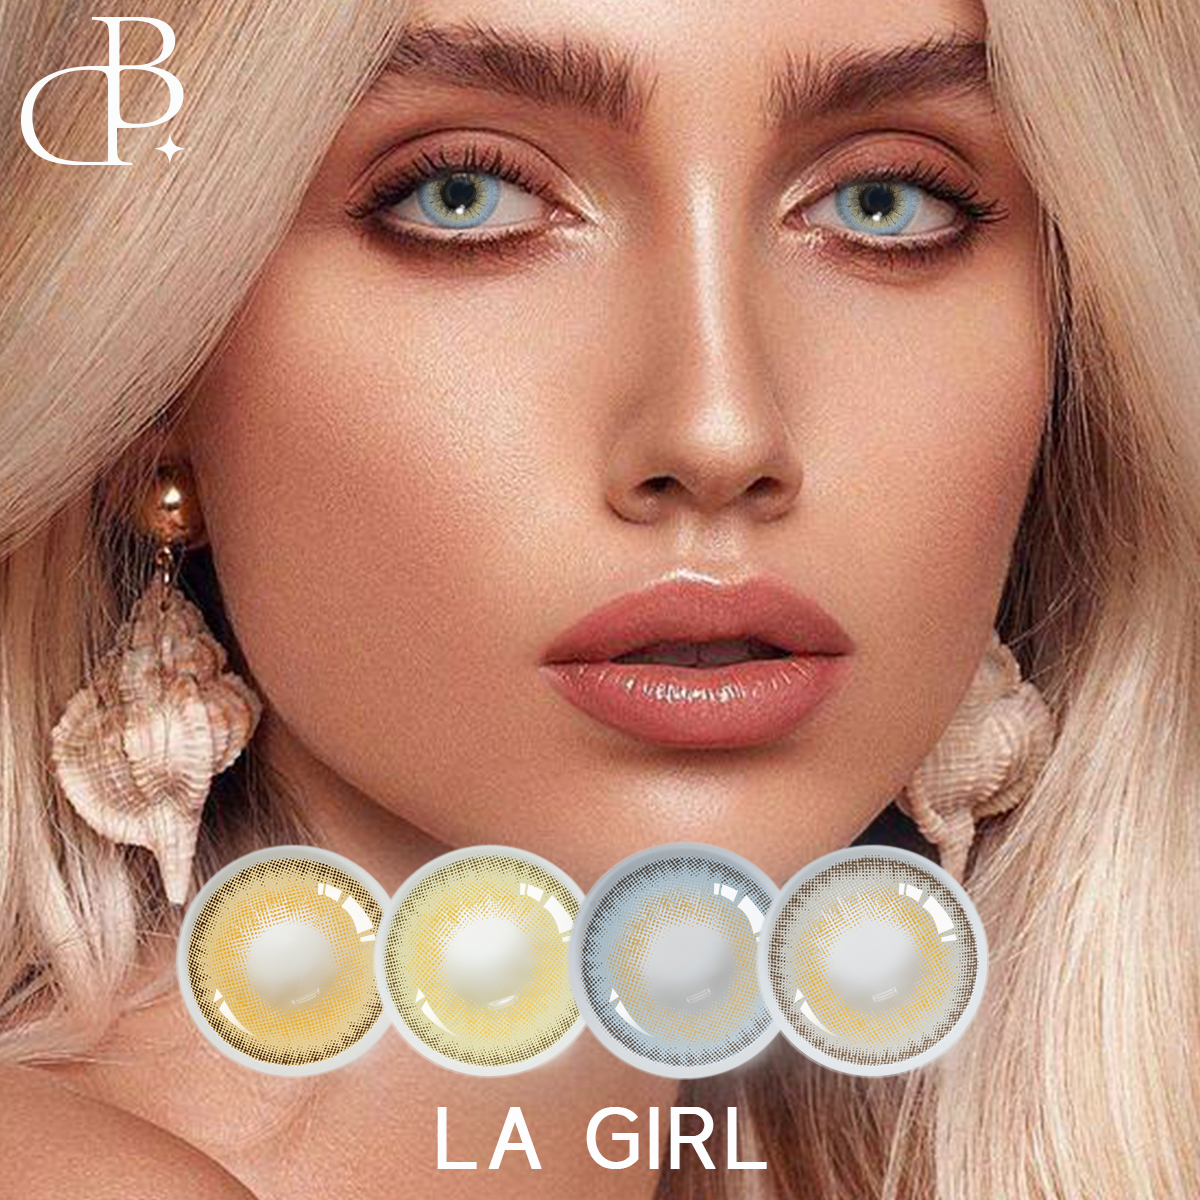 LA GIRL Kasmetiniai kosmetiniai gražūs dideli vyzdžiai Minkštos akys Pupilentes De Colores Lentes De Contacto spalvoti kontaktiniai lęšiai